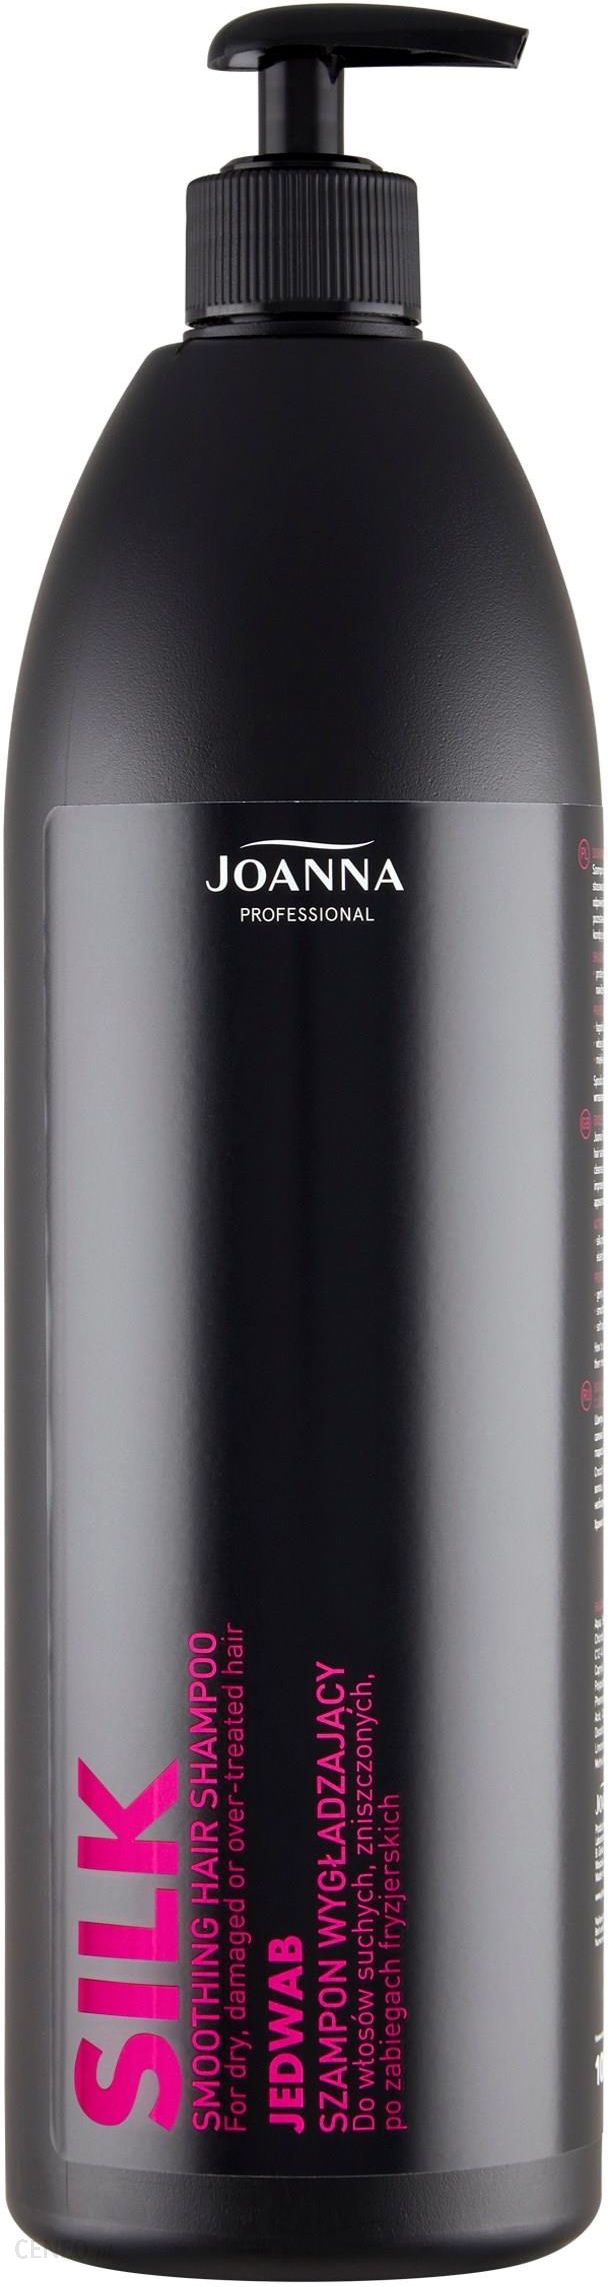 joanna szampon z jedwabiem